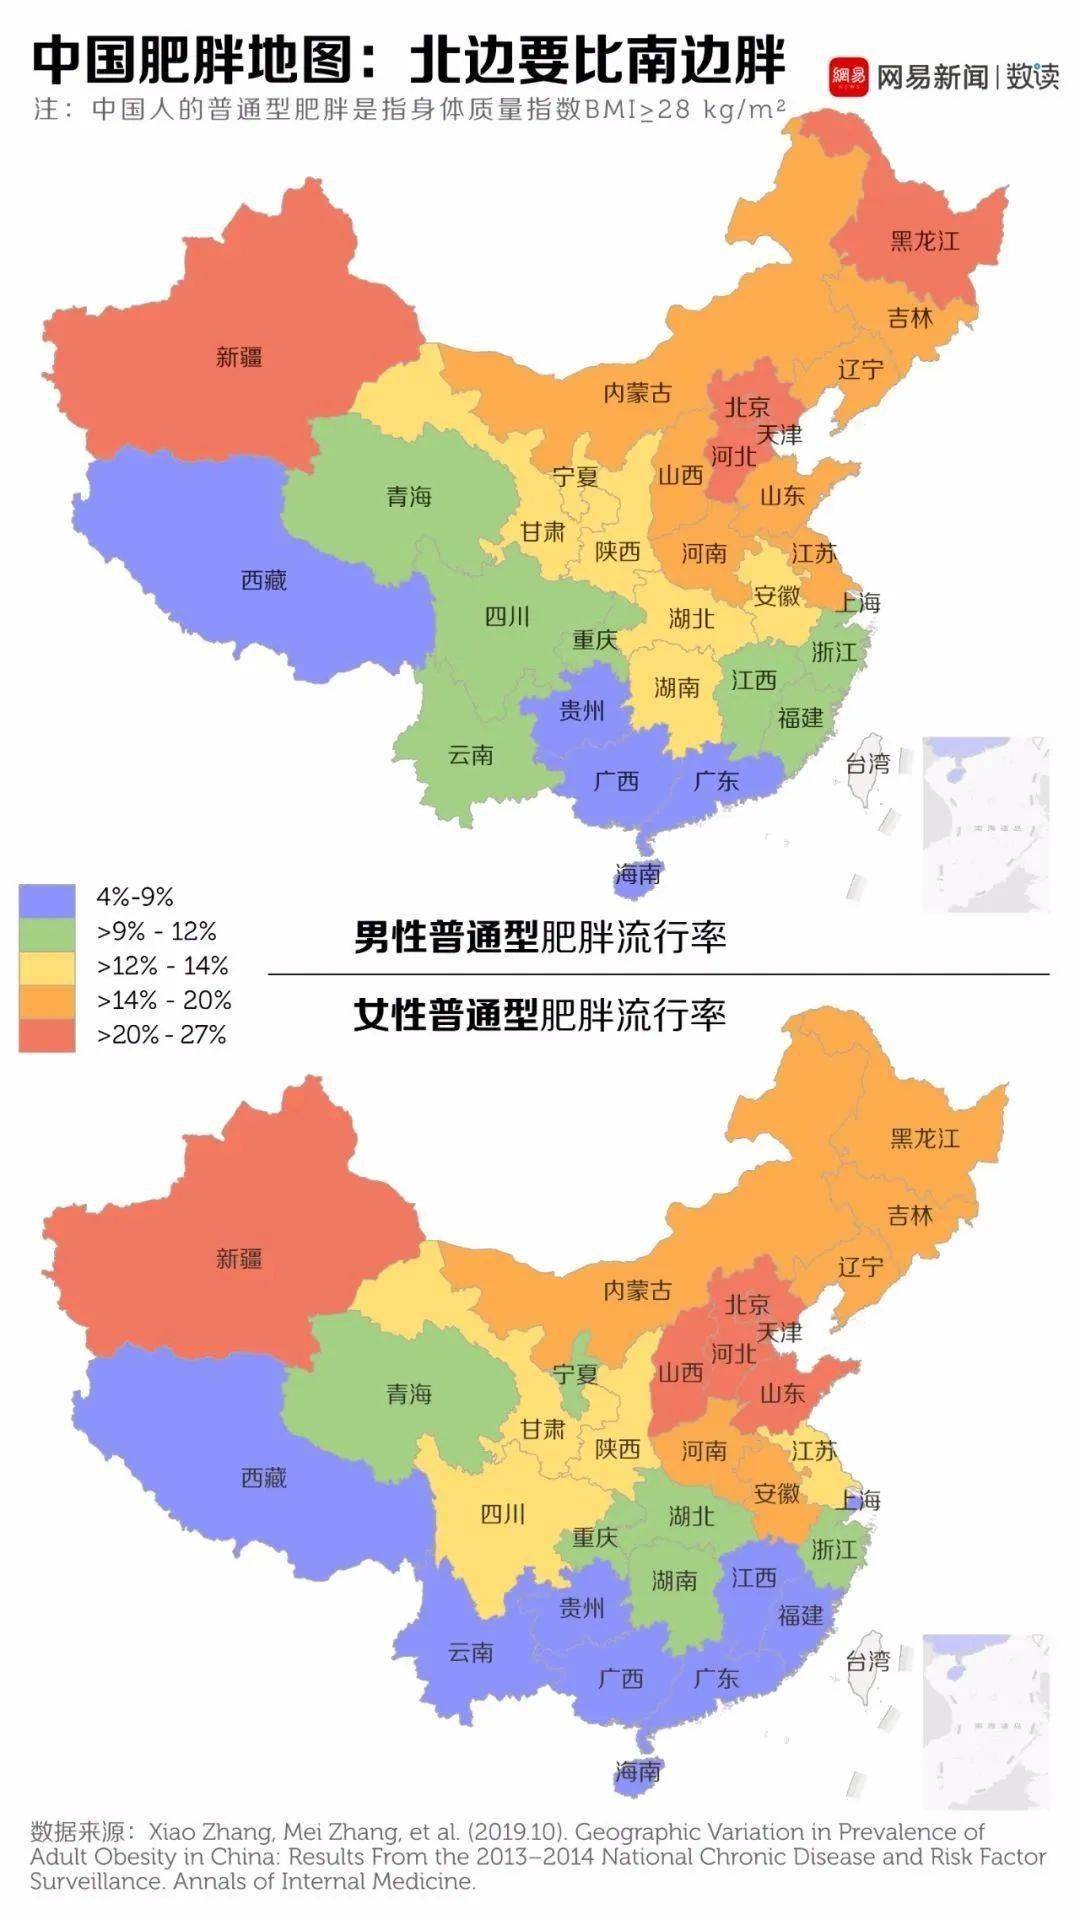 当女性腰围超过85cm 而男性腰围超过90cm 中国肥胖地图出炉 中国肥胖